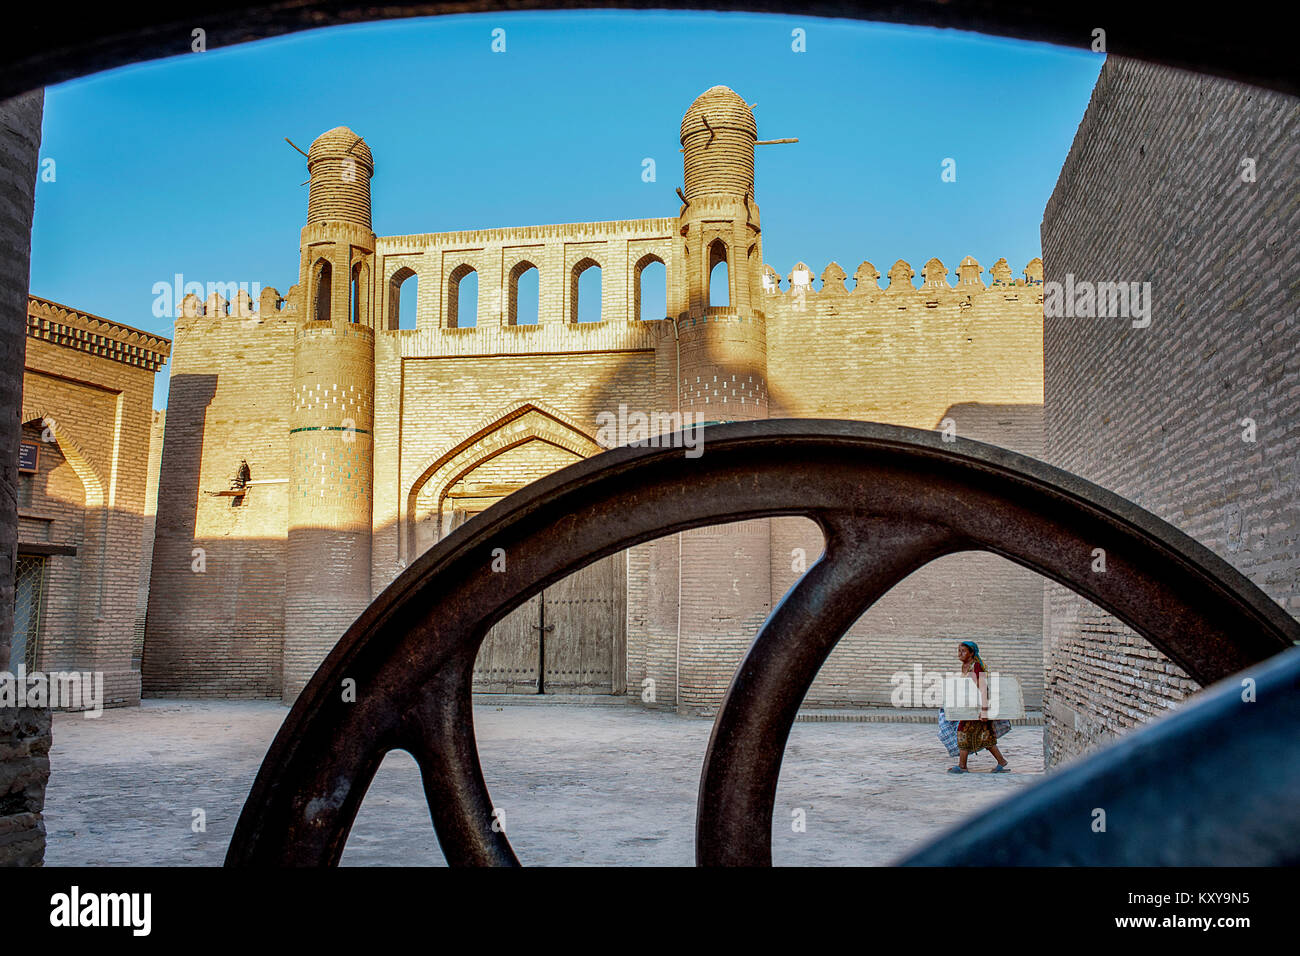 The ancient city of Khiva Stock Photo